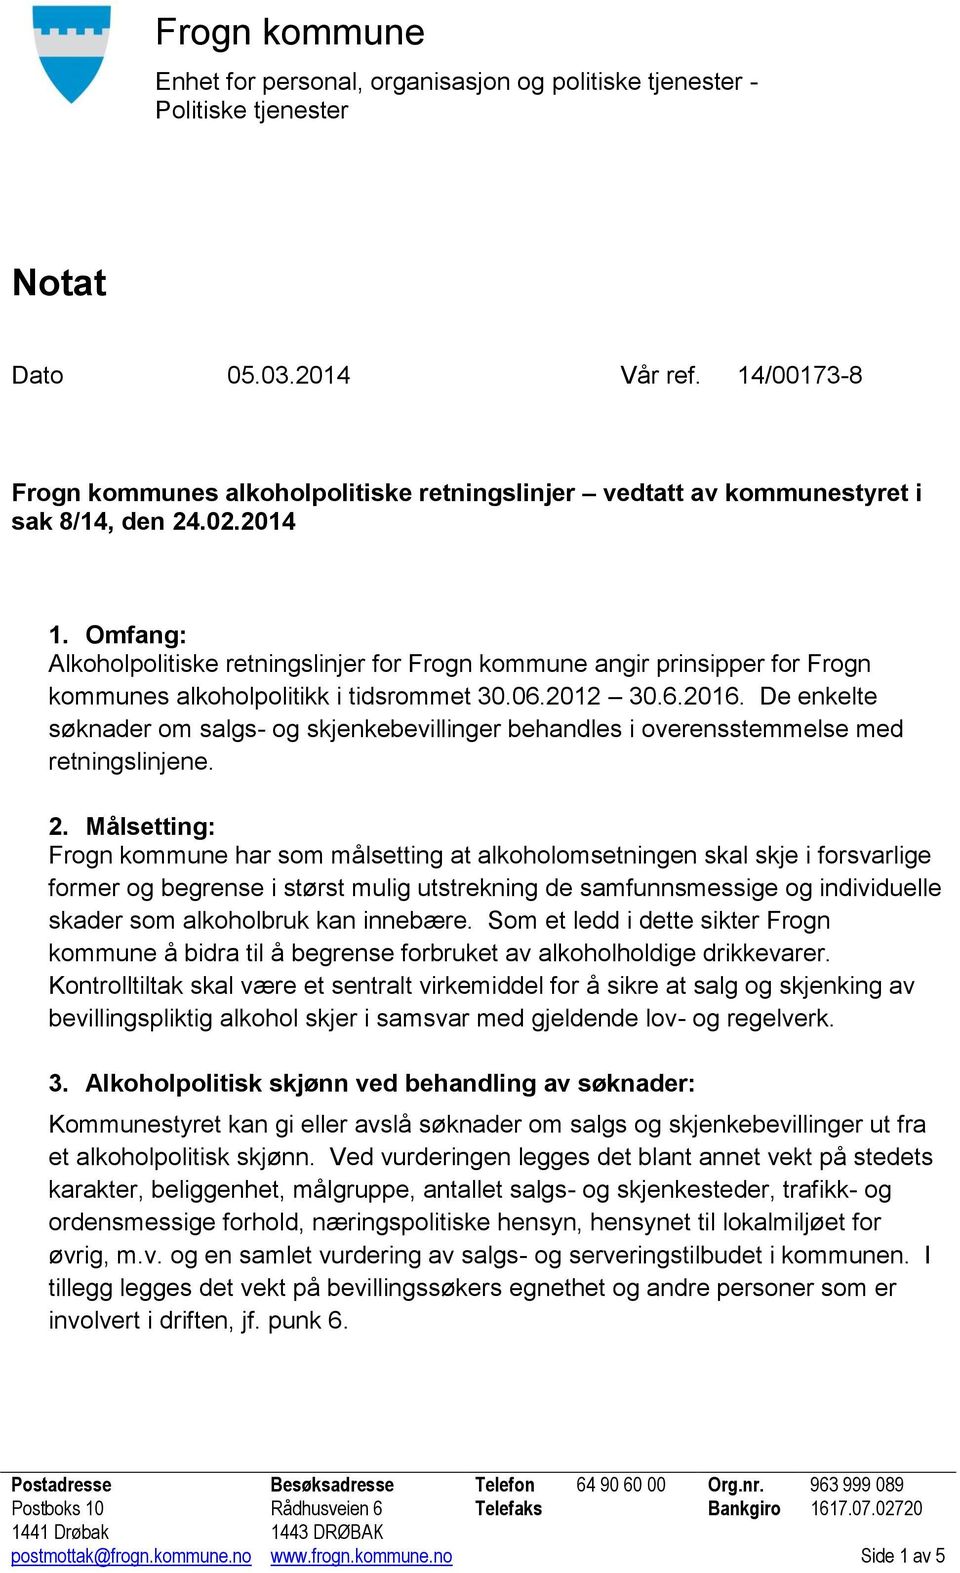 Omfang: Alkoholpolitiske retningslinjer for Frogn kommune angir prinsipper for Frogn kommunes alkoholpolitikk i tidsrommet 30.06.2012 30.6.2016.